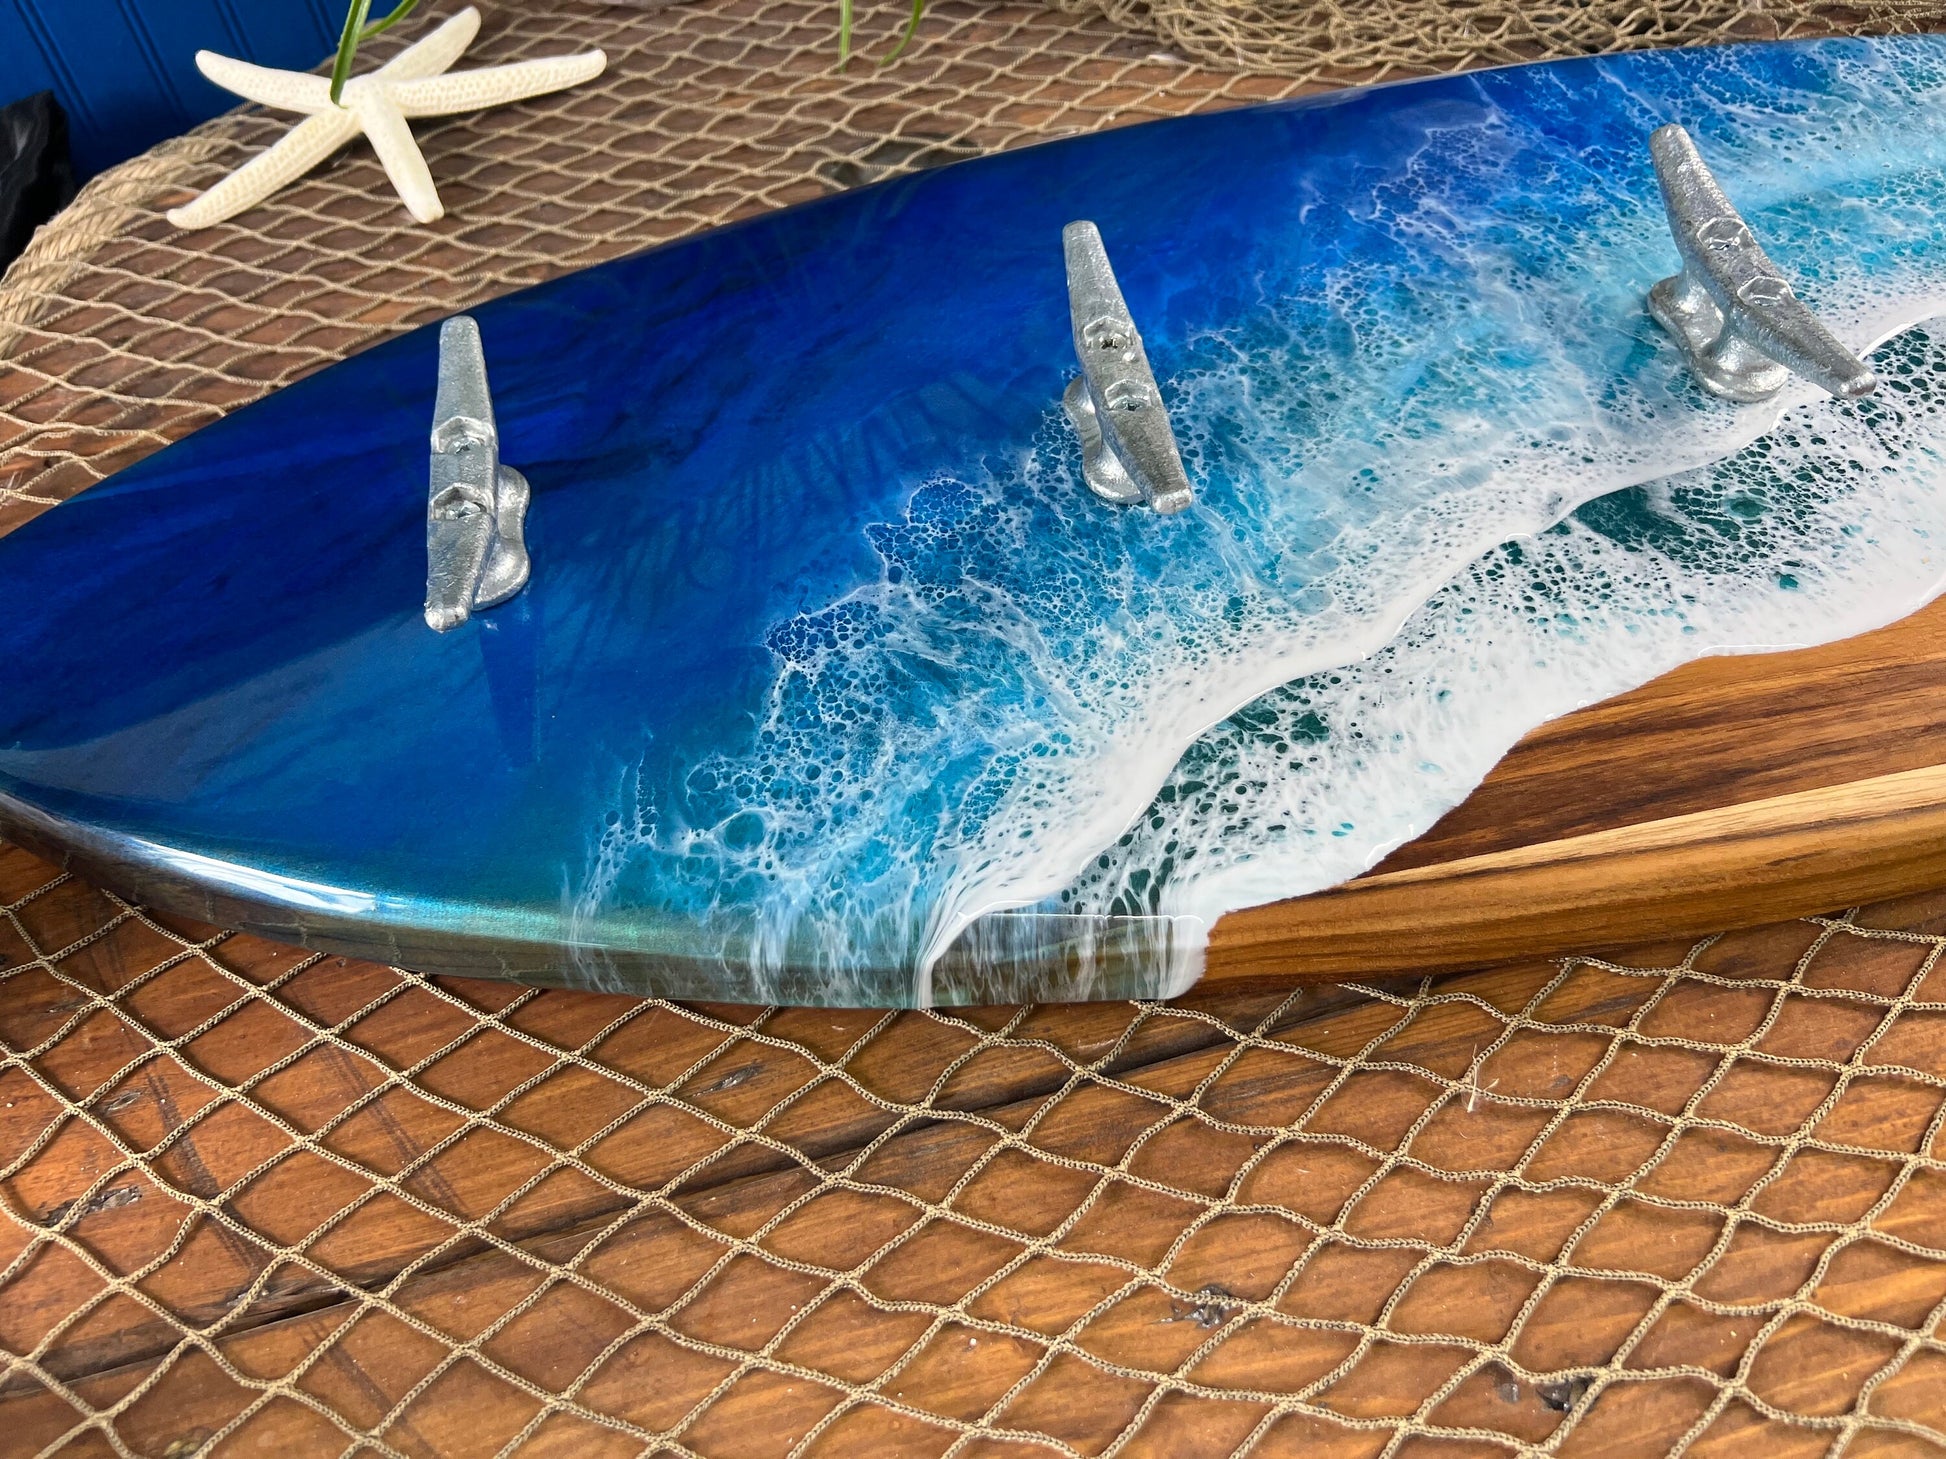 Ocean Waves Epoxy Resin 3’ Teak Surfboard with dock cleats/hooks